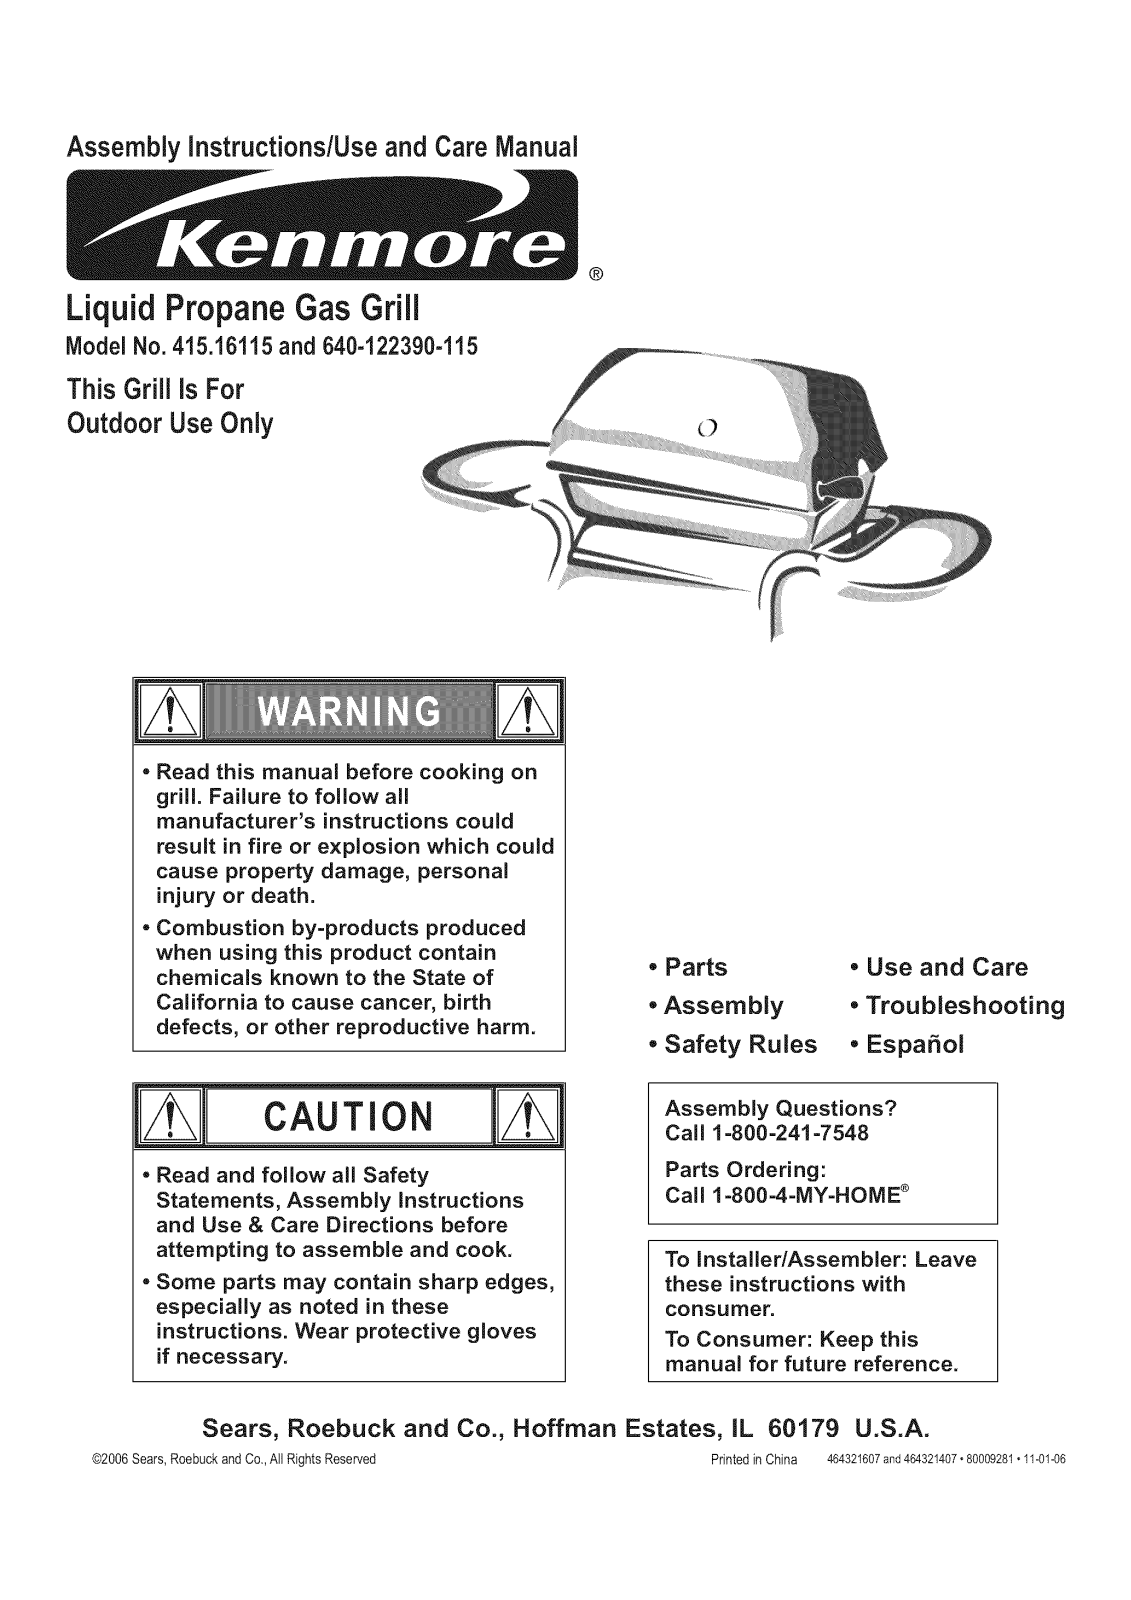 Kenmore 41516115, 640-122390-115 Owner’s Manual